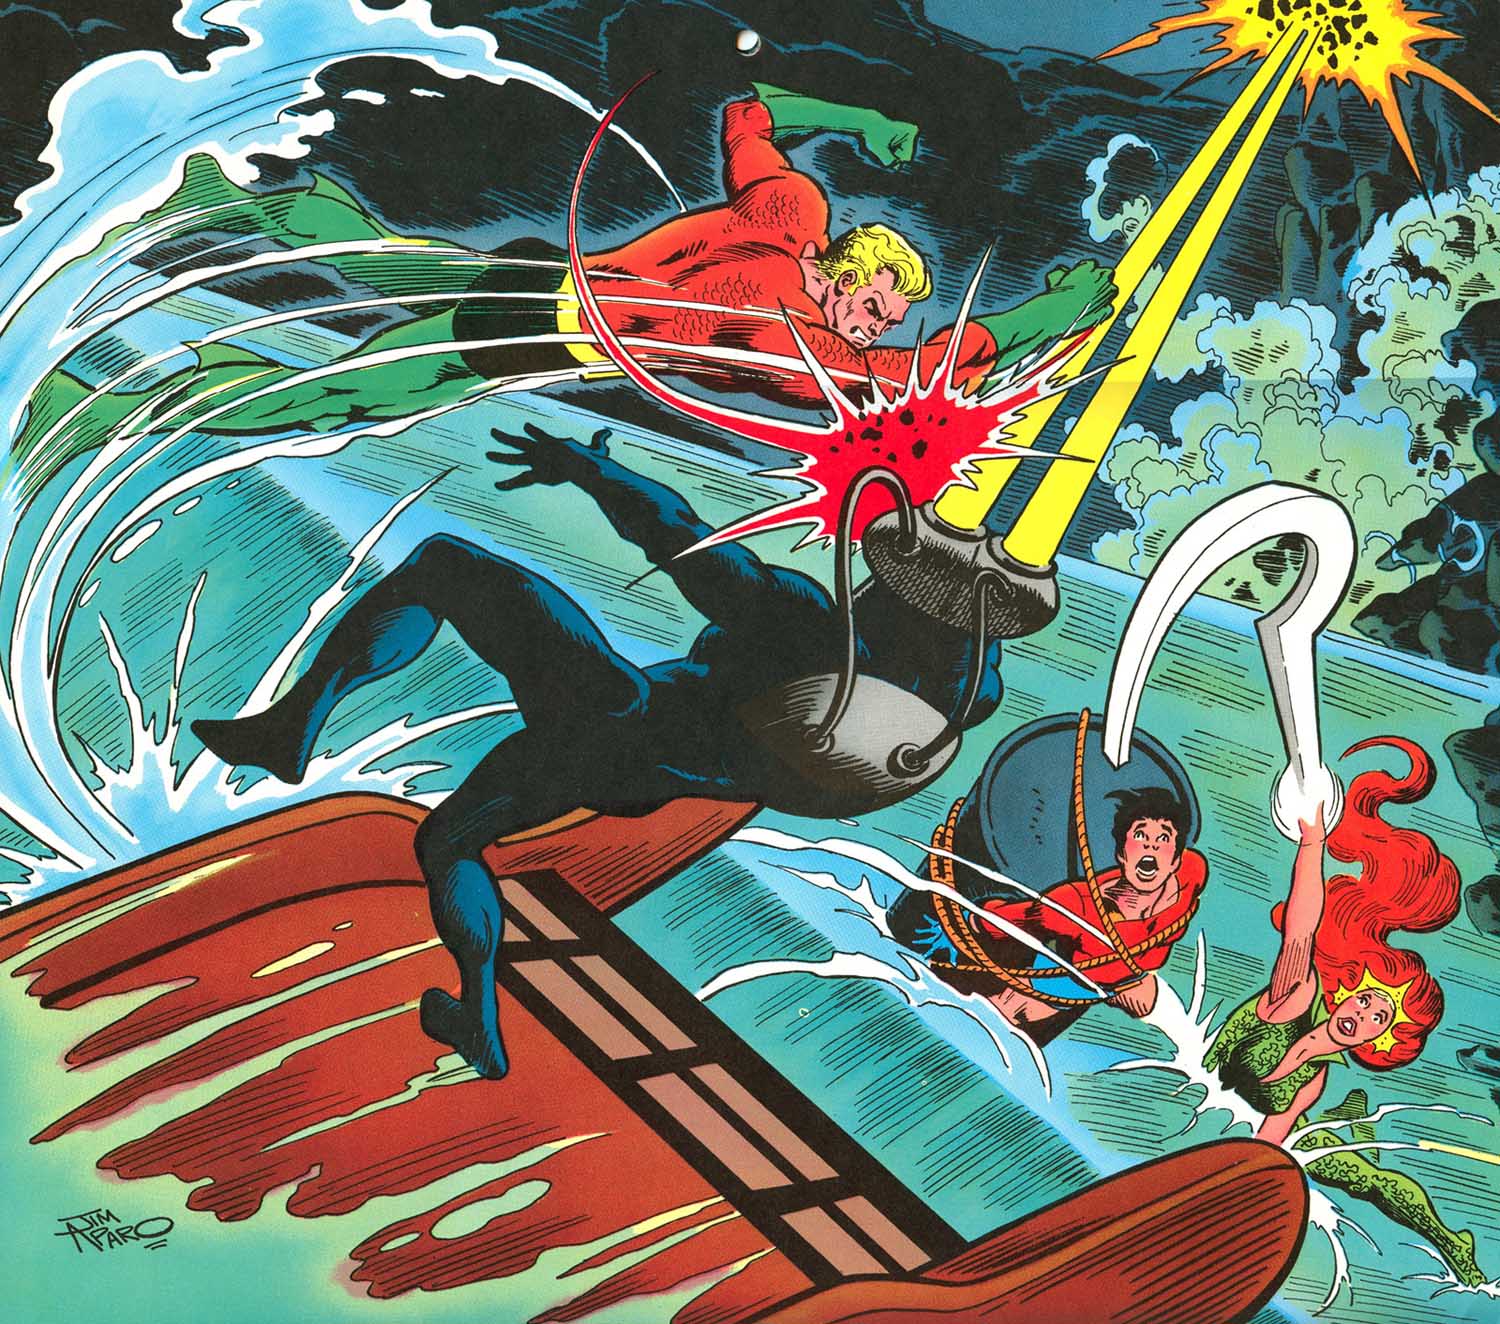 Super DC Calendar for June: Aquaman vs Black Manta